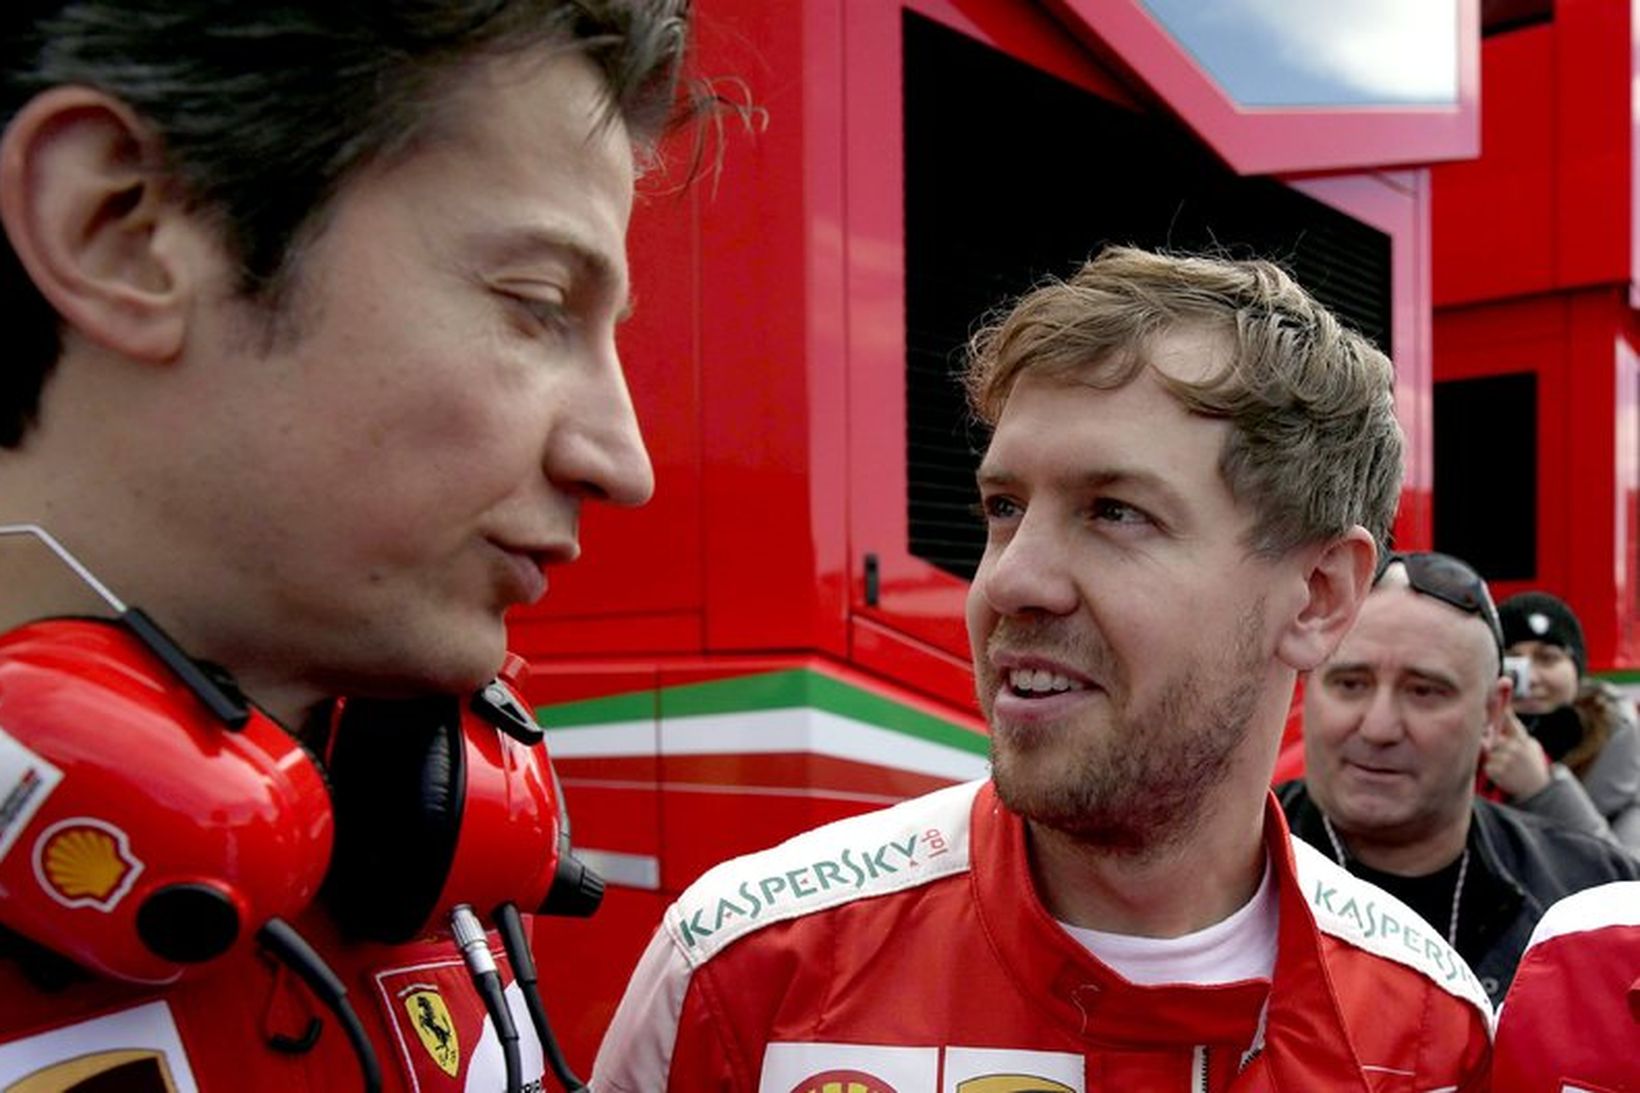 Vettel ræðir við Ferraristjórann Massimo Rovola milli aksturslota við bílprófanir …